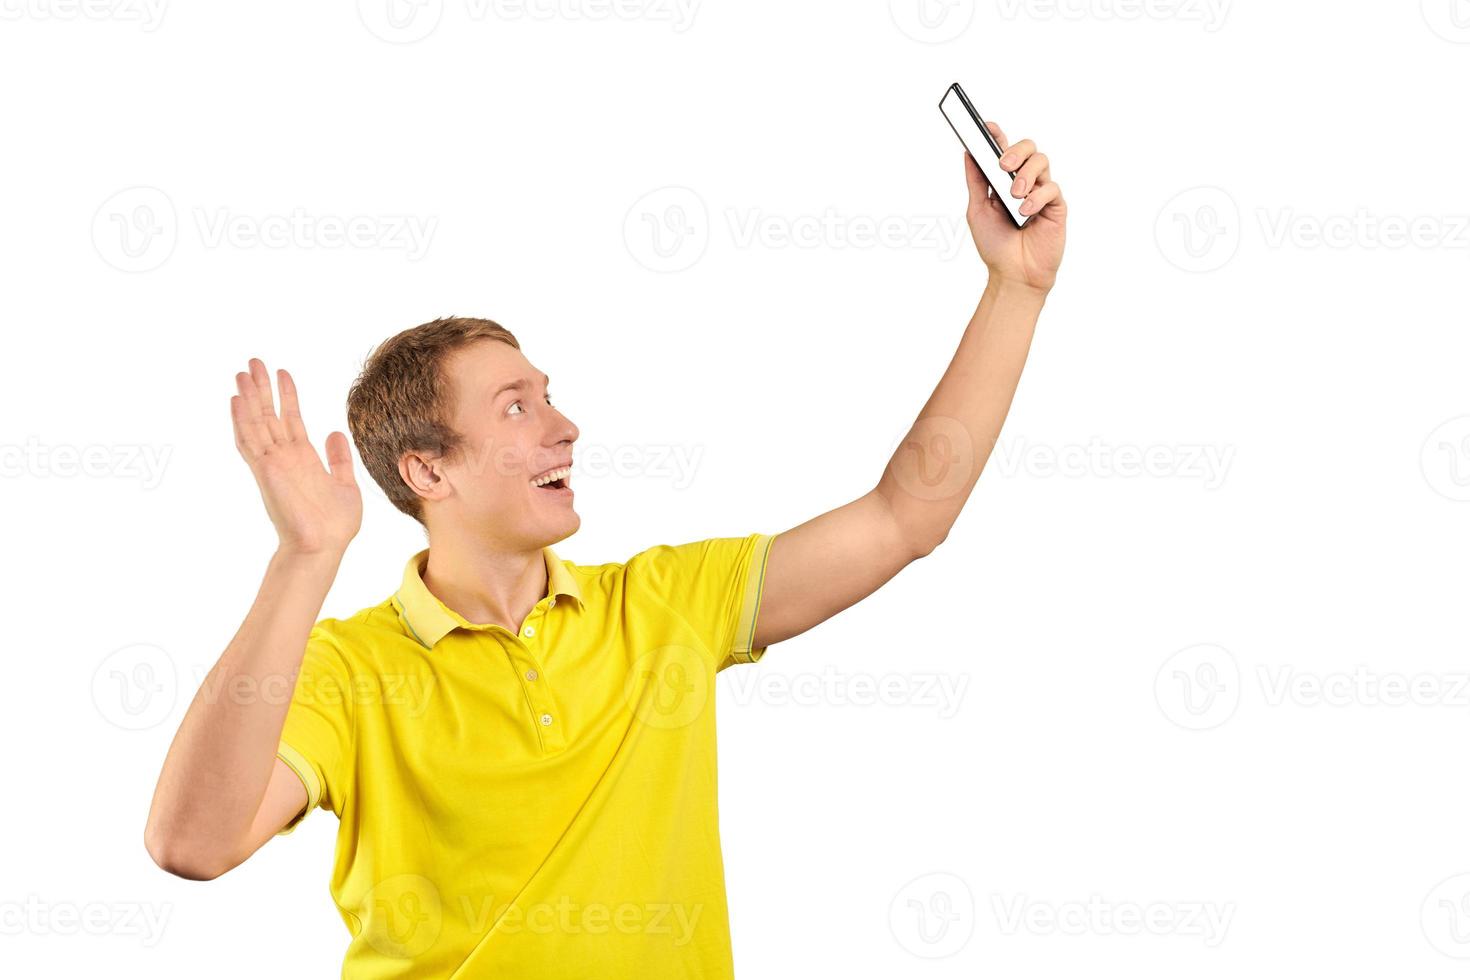 cara engraçado em vídeo de camiseta amarela brilhante conversando usando videochamada com telefone, jovem sorridente foto